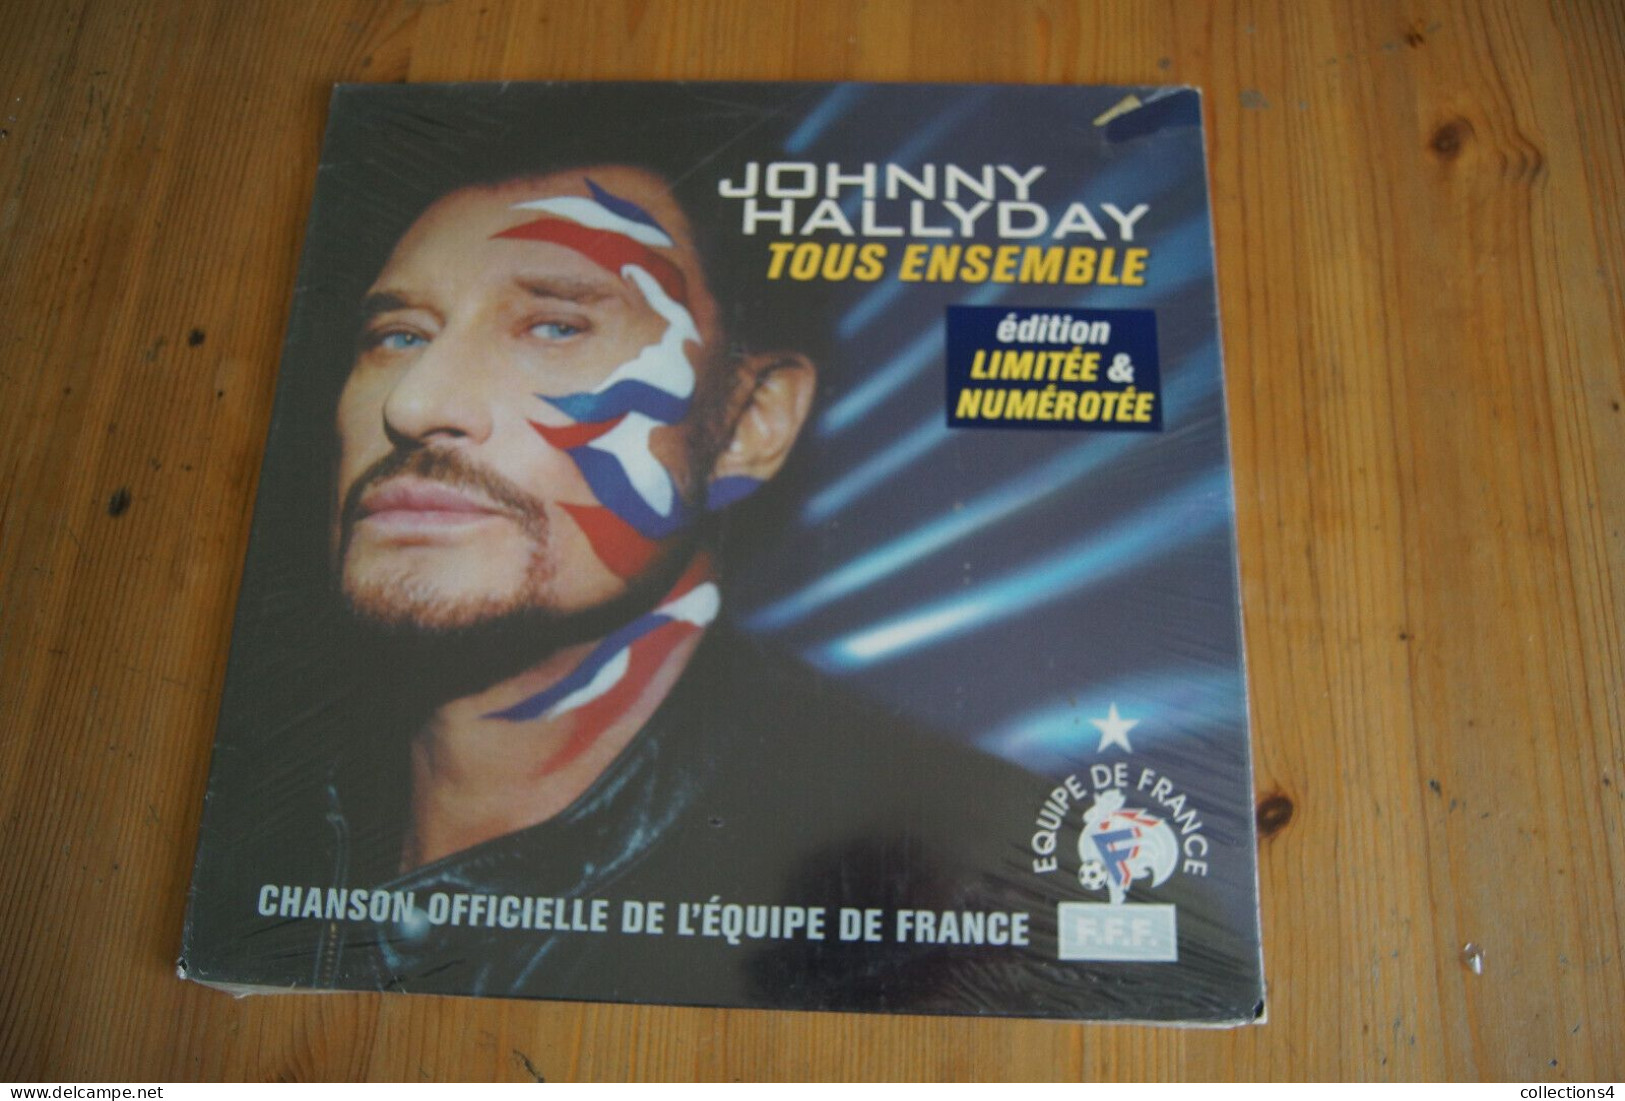 JOHNNY HALLYDAY TOUS ENSEMBLE MAXI 45T NUMEROTEE NEUF SCELLE 2002 - 45 T - Maxi-Single